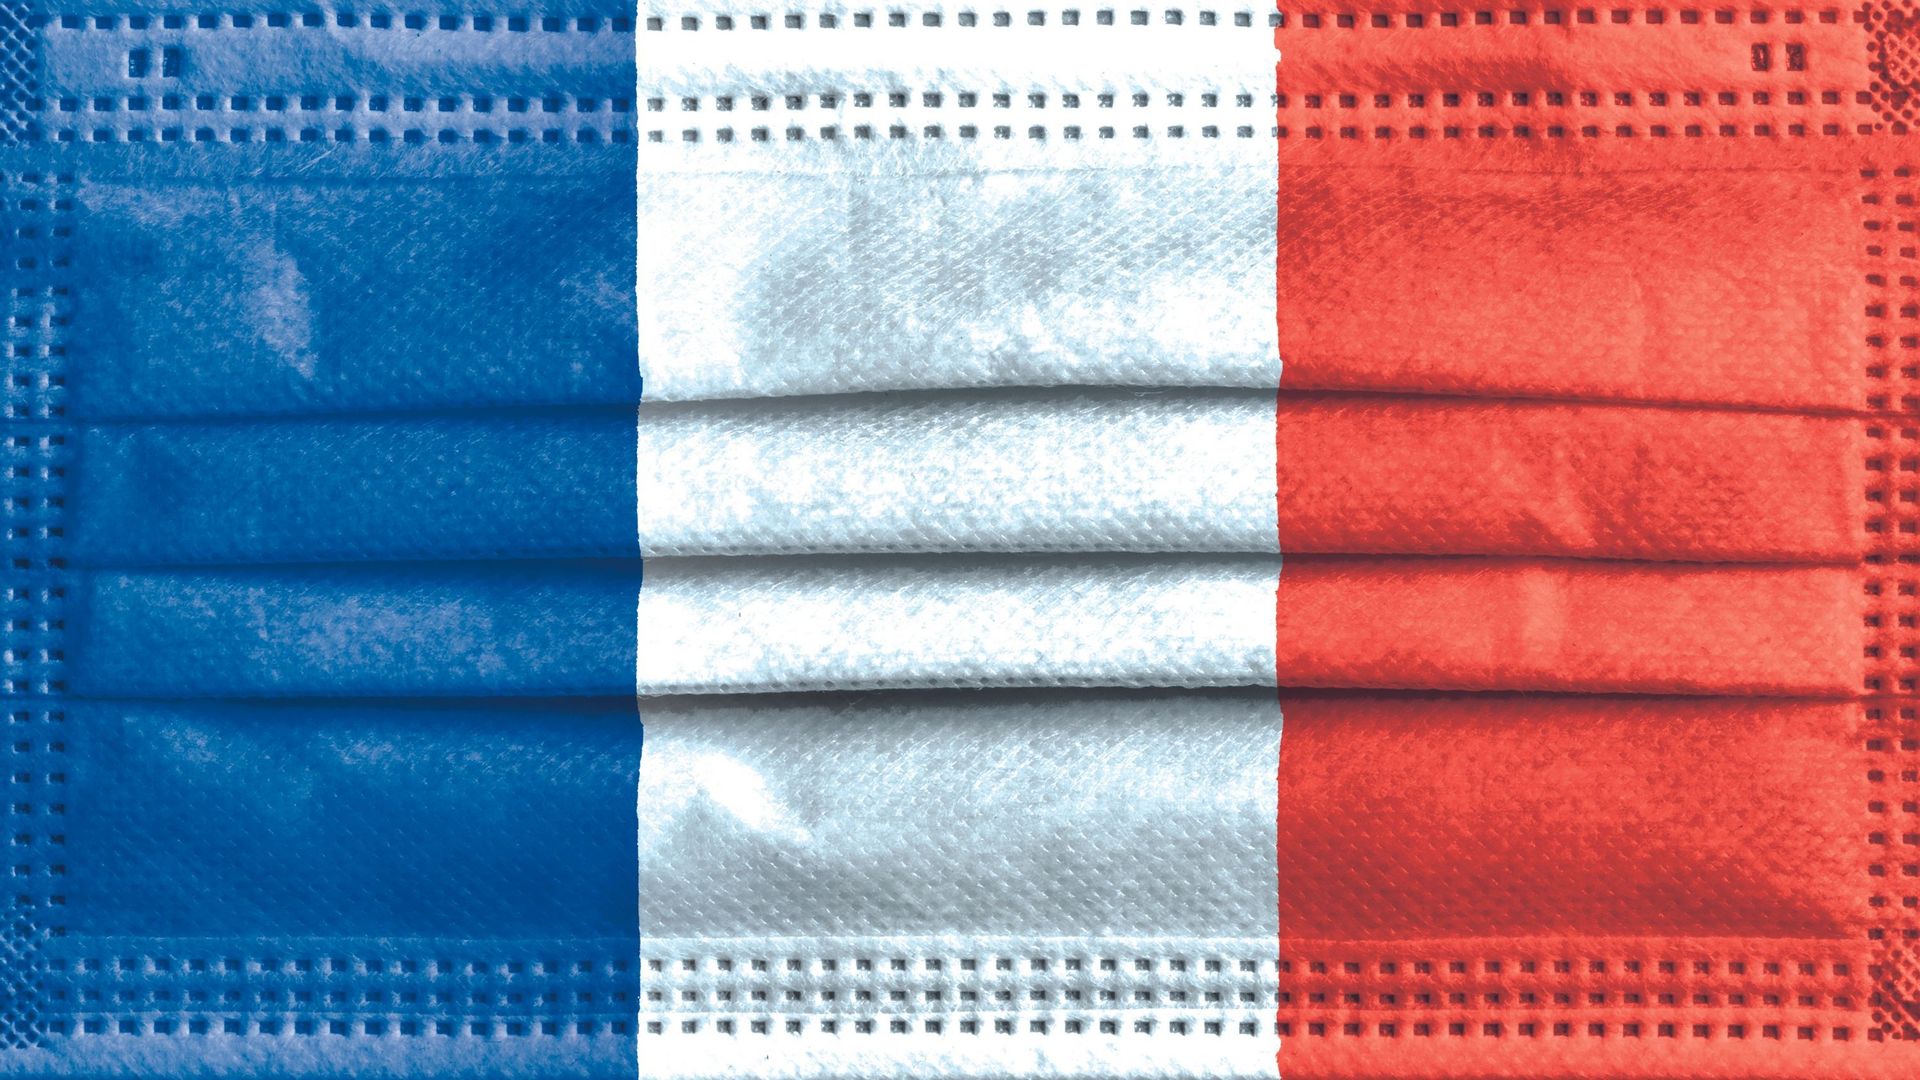 Masque aux couleurs de la France (illustration)